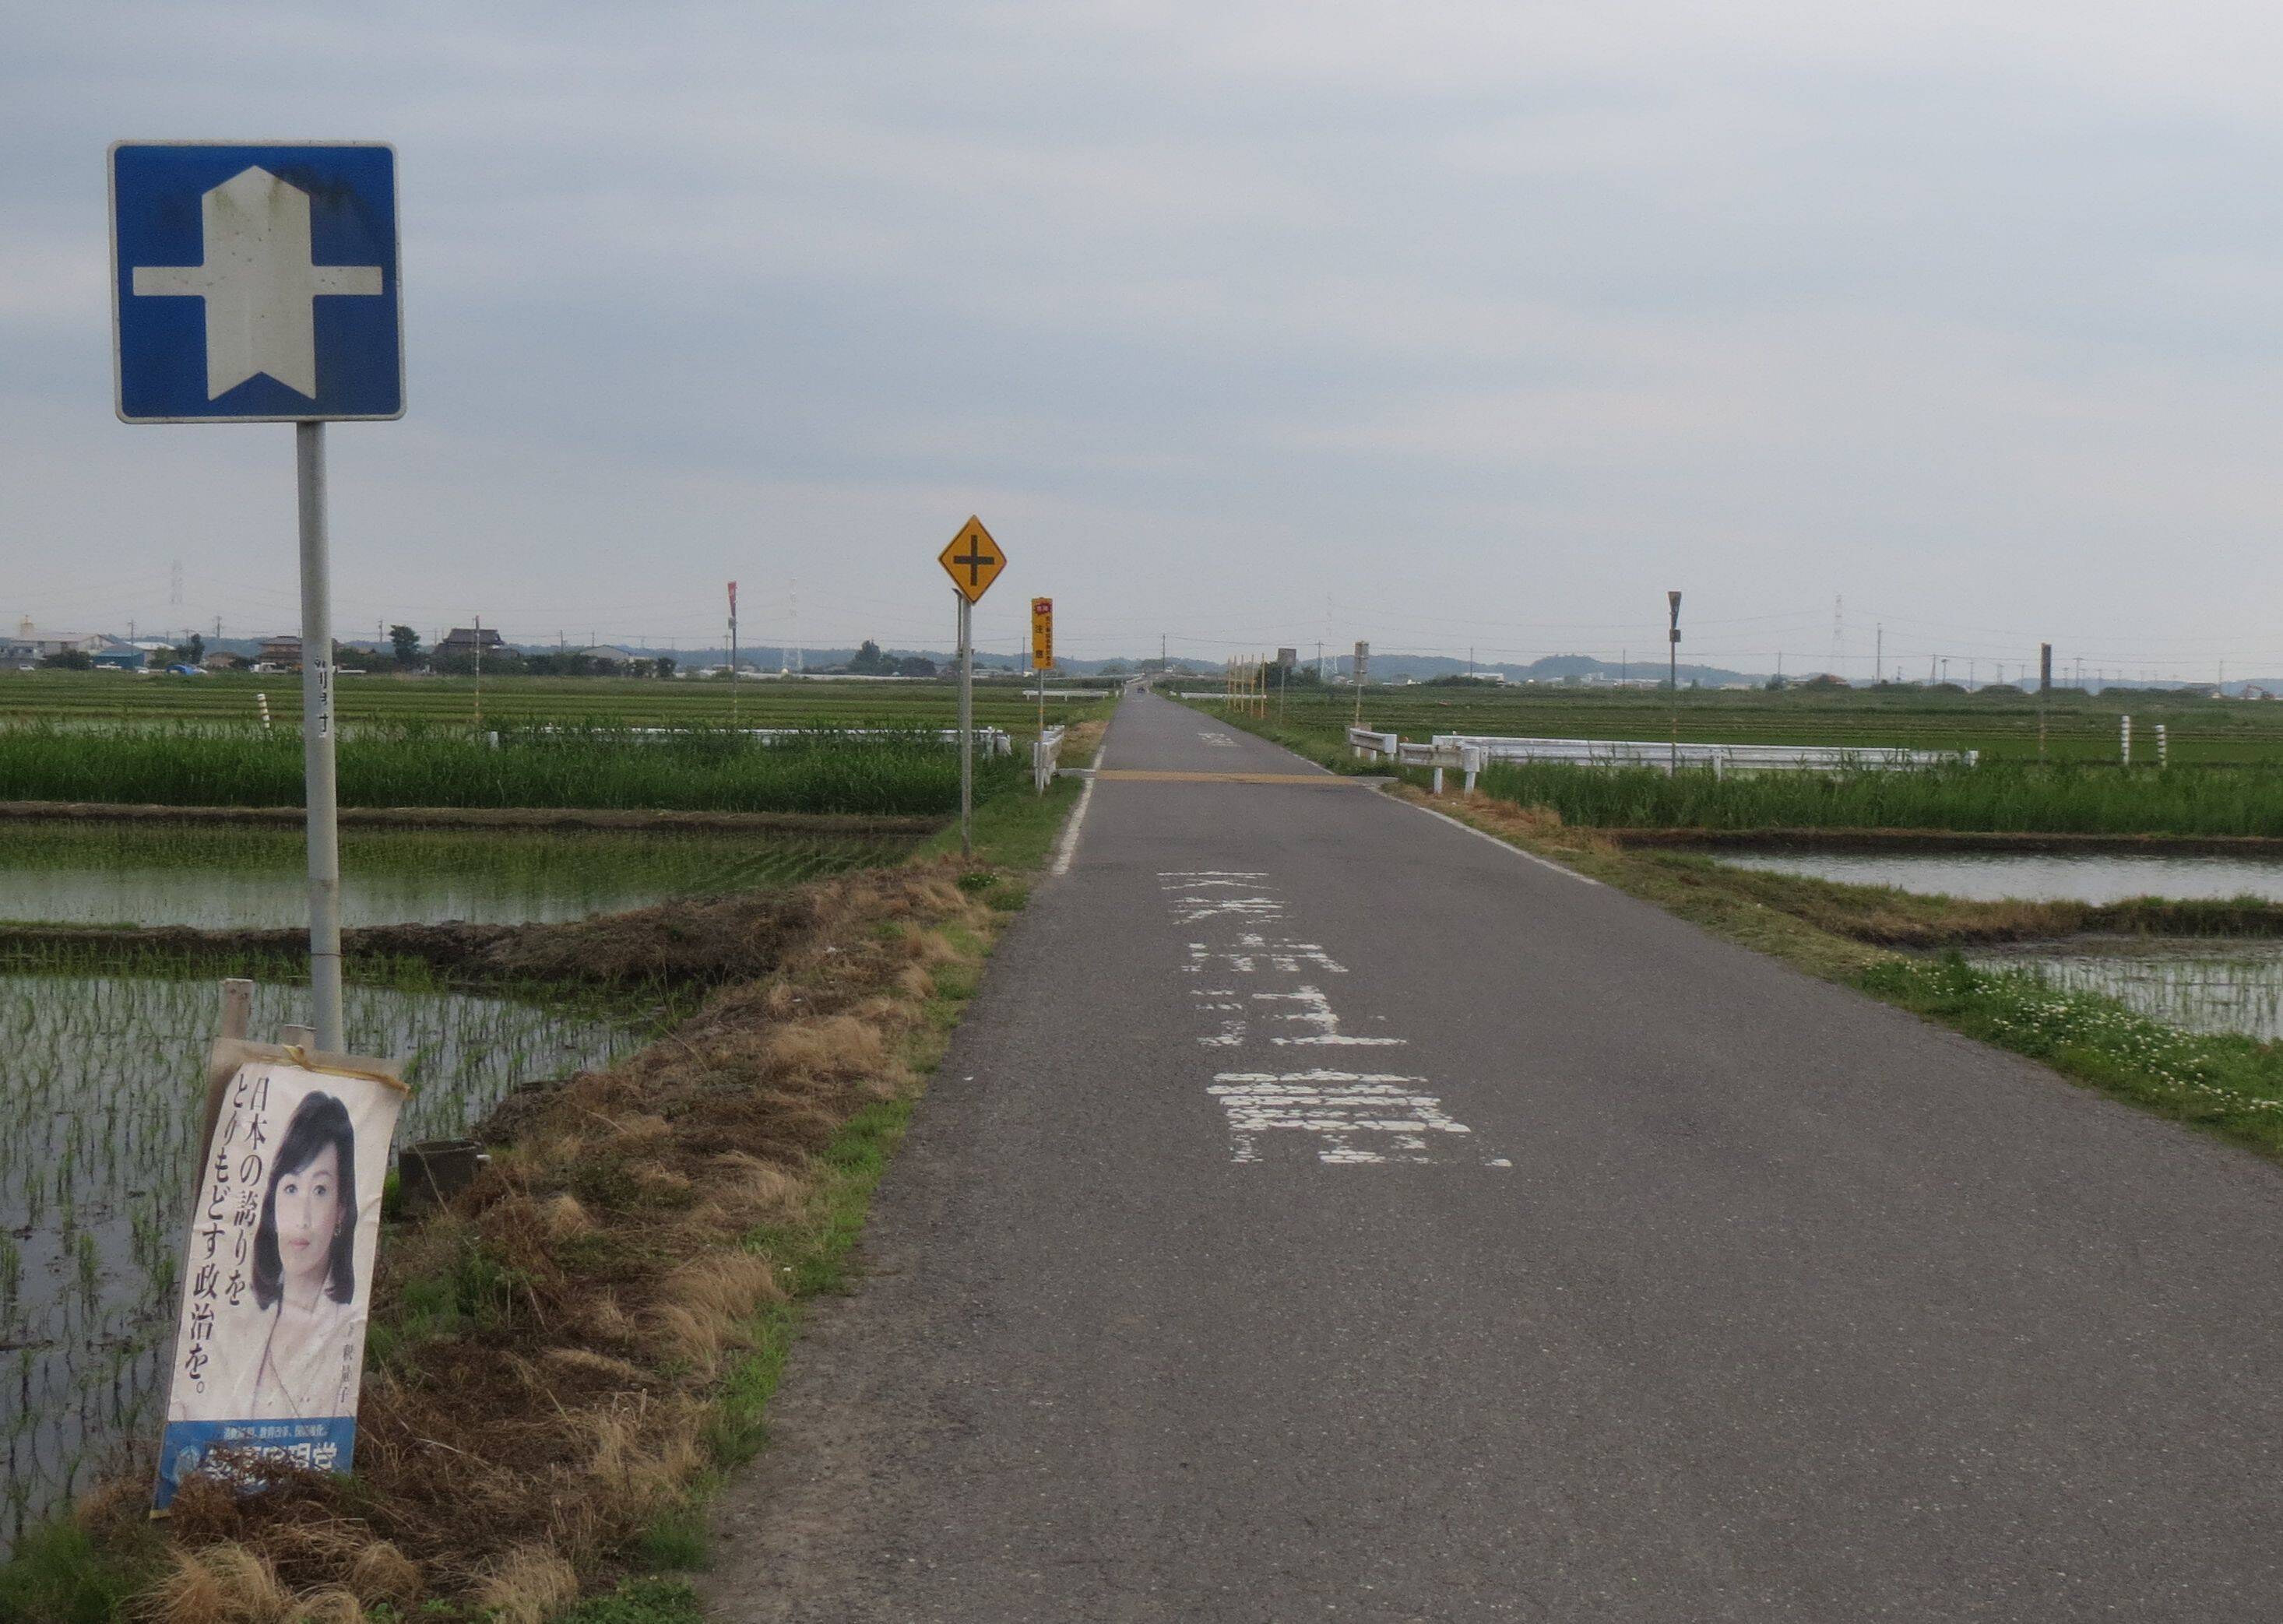 茨城県稲敷市、田園地帯にぽつんと立つ道路標識がとんでもなくレア物だった